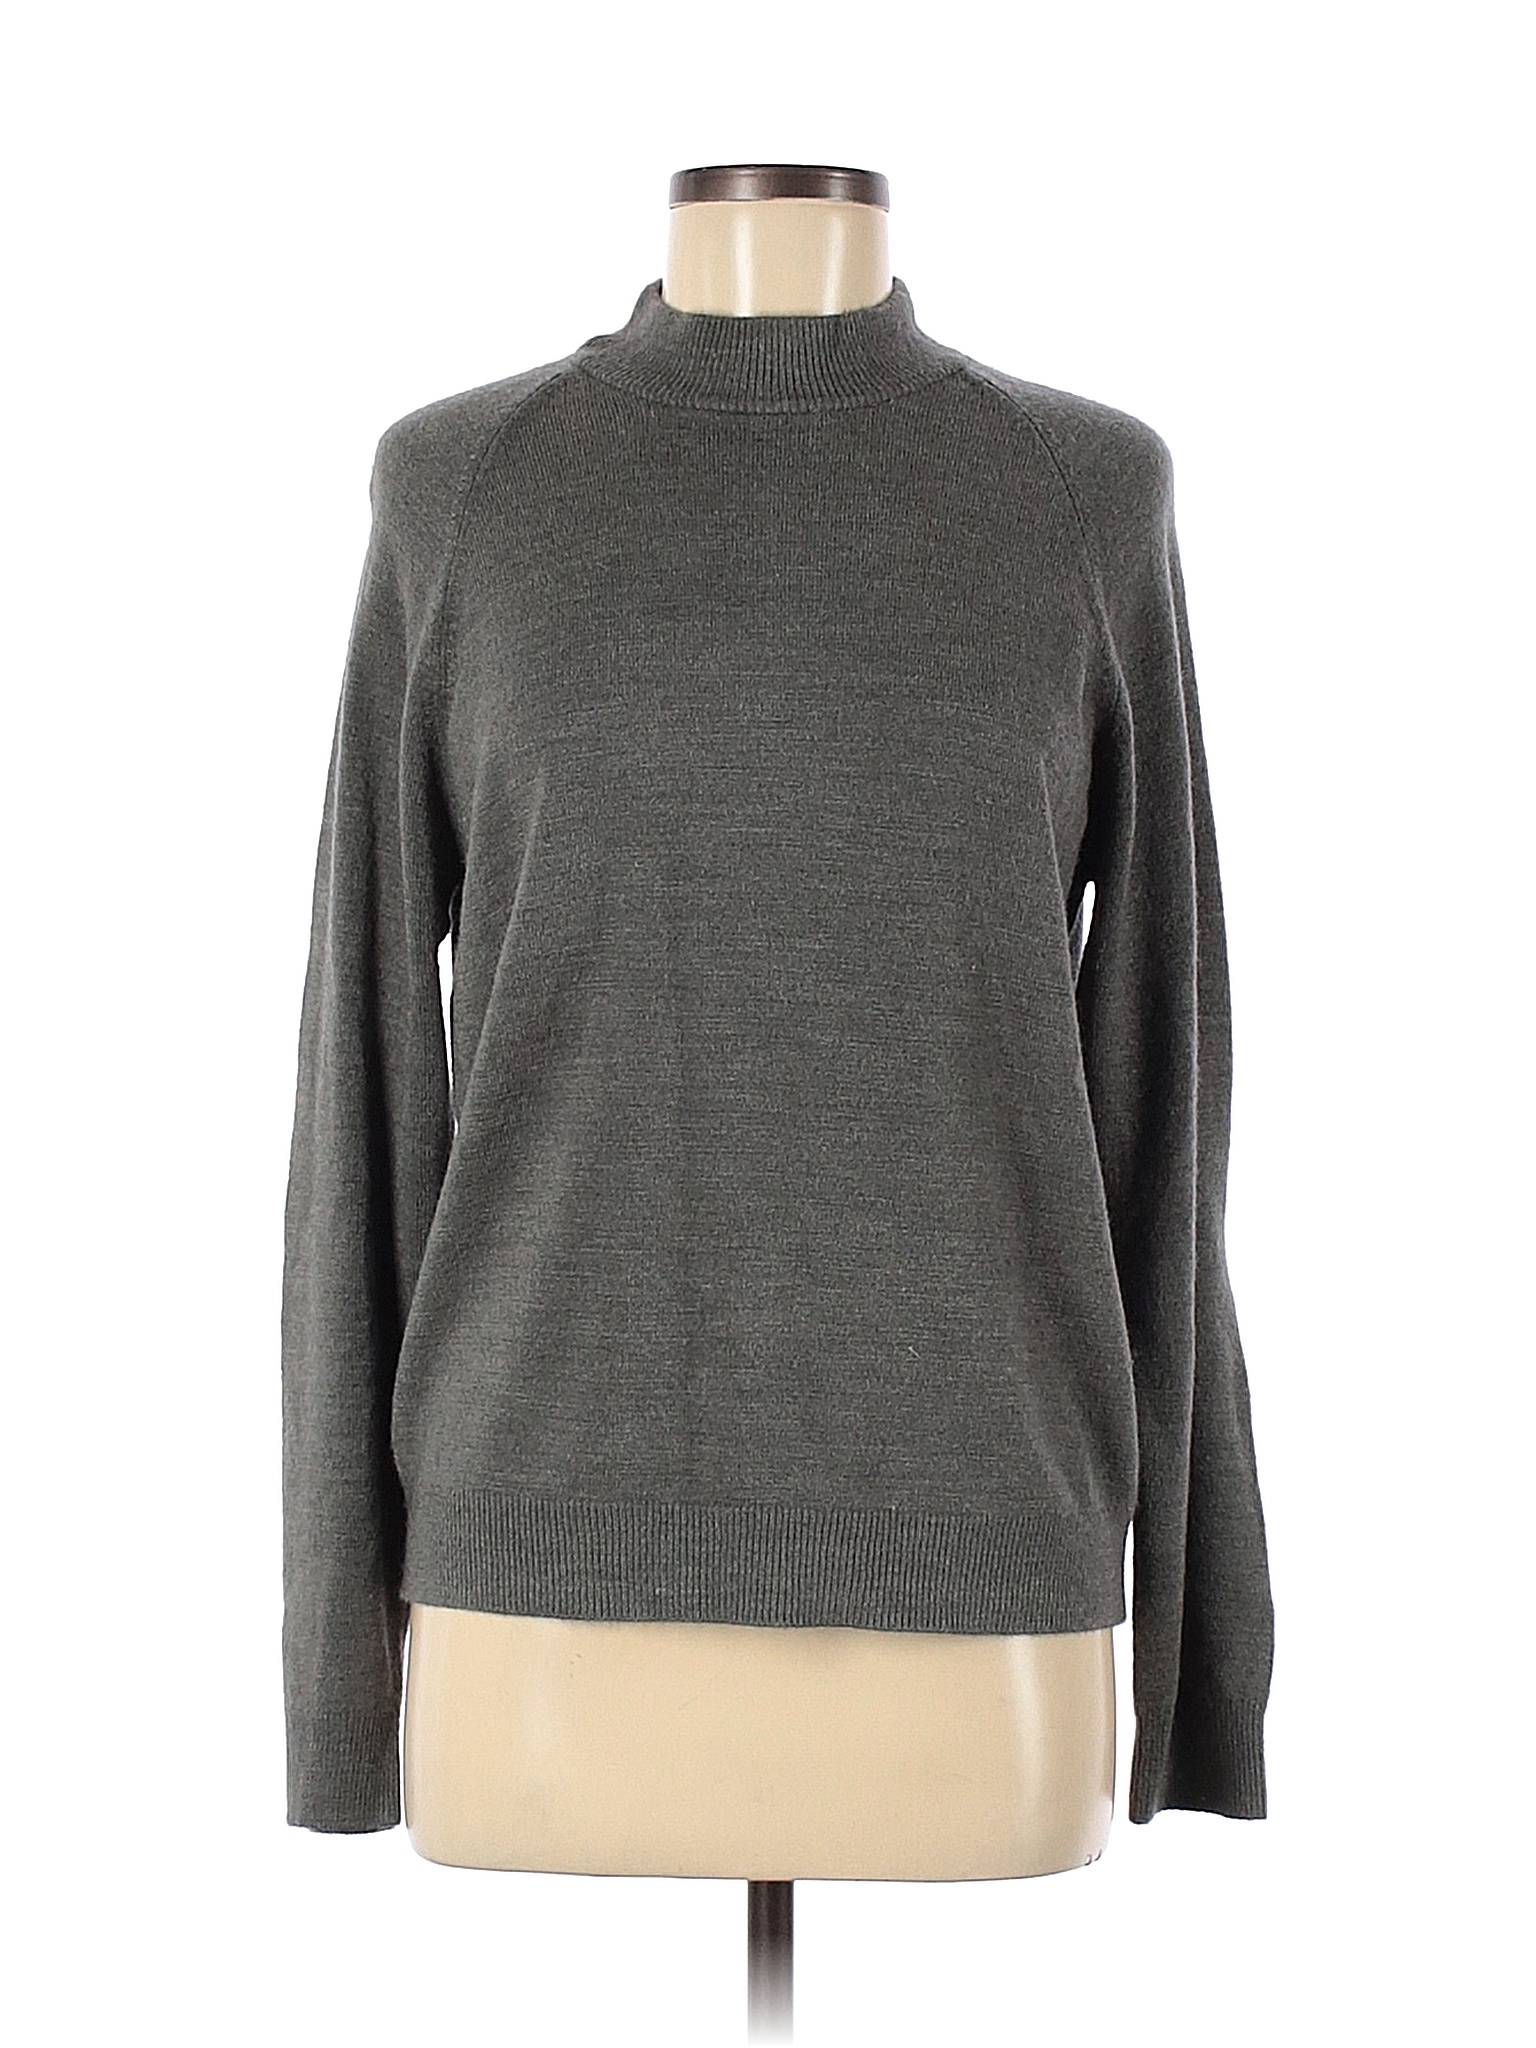 Draper's & Damon's 100% Acrylic Solid Color Block Gray Pullover Sweater ...